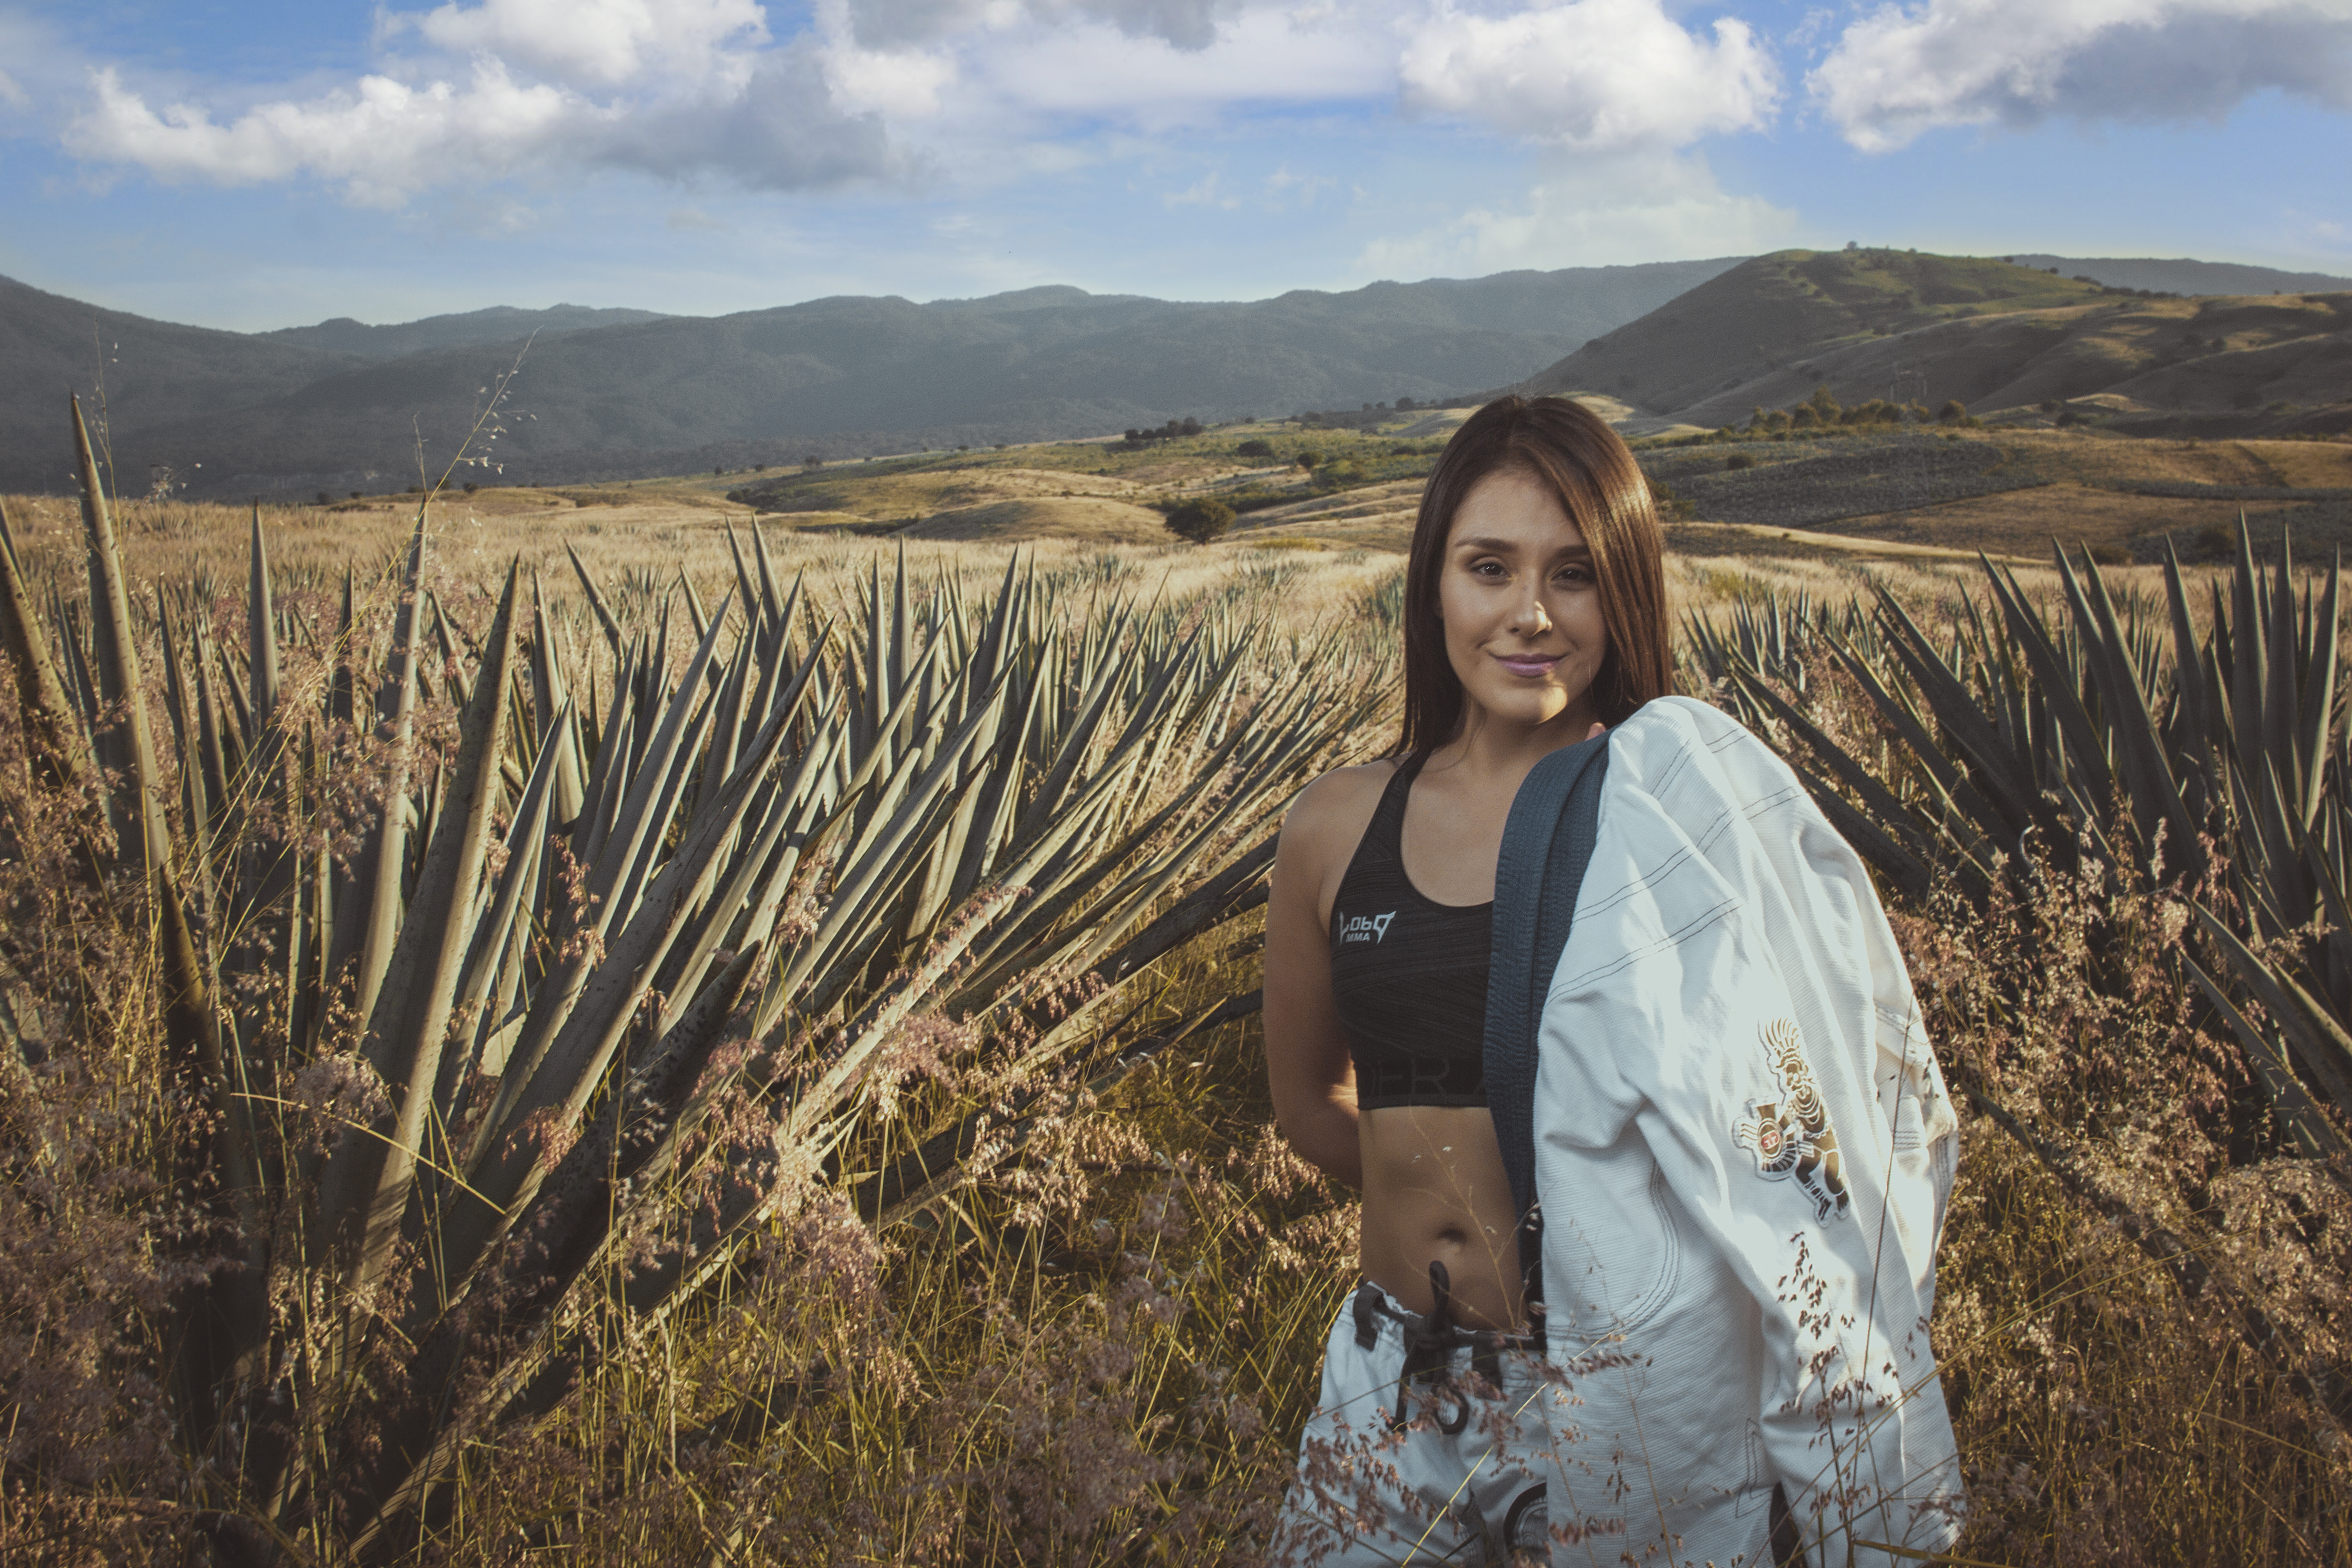 Алекса Грассо: мексиканская милашка из UFC, идущая за поясом Валентины Шевченко